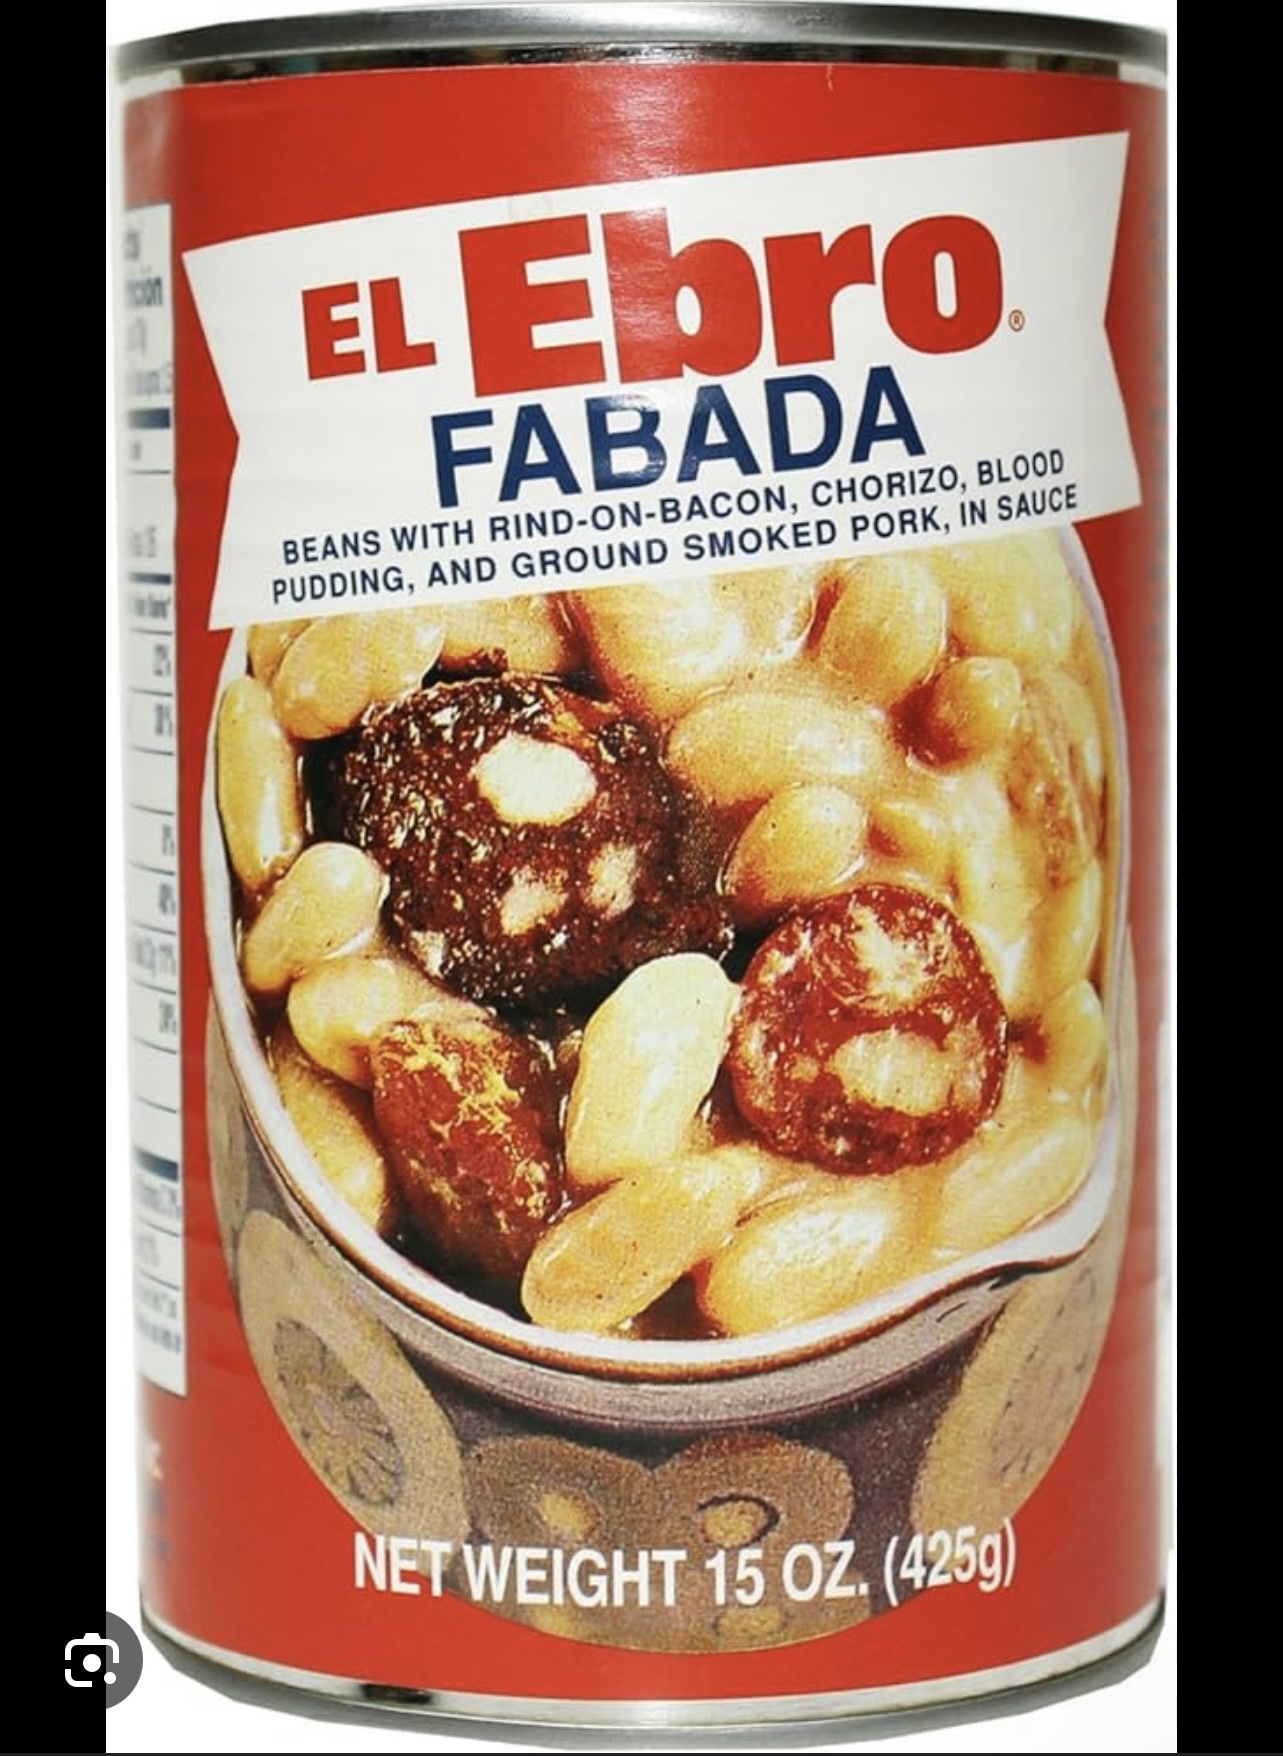 El Ebro Fabada Soup, 15 oz - image 3 of 6